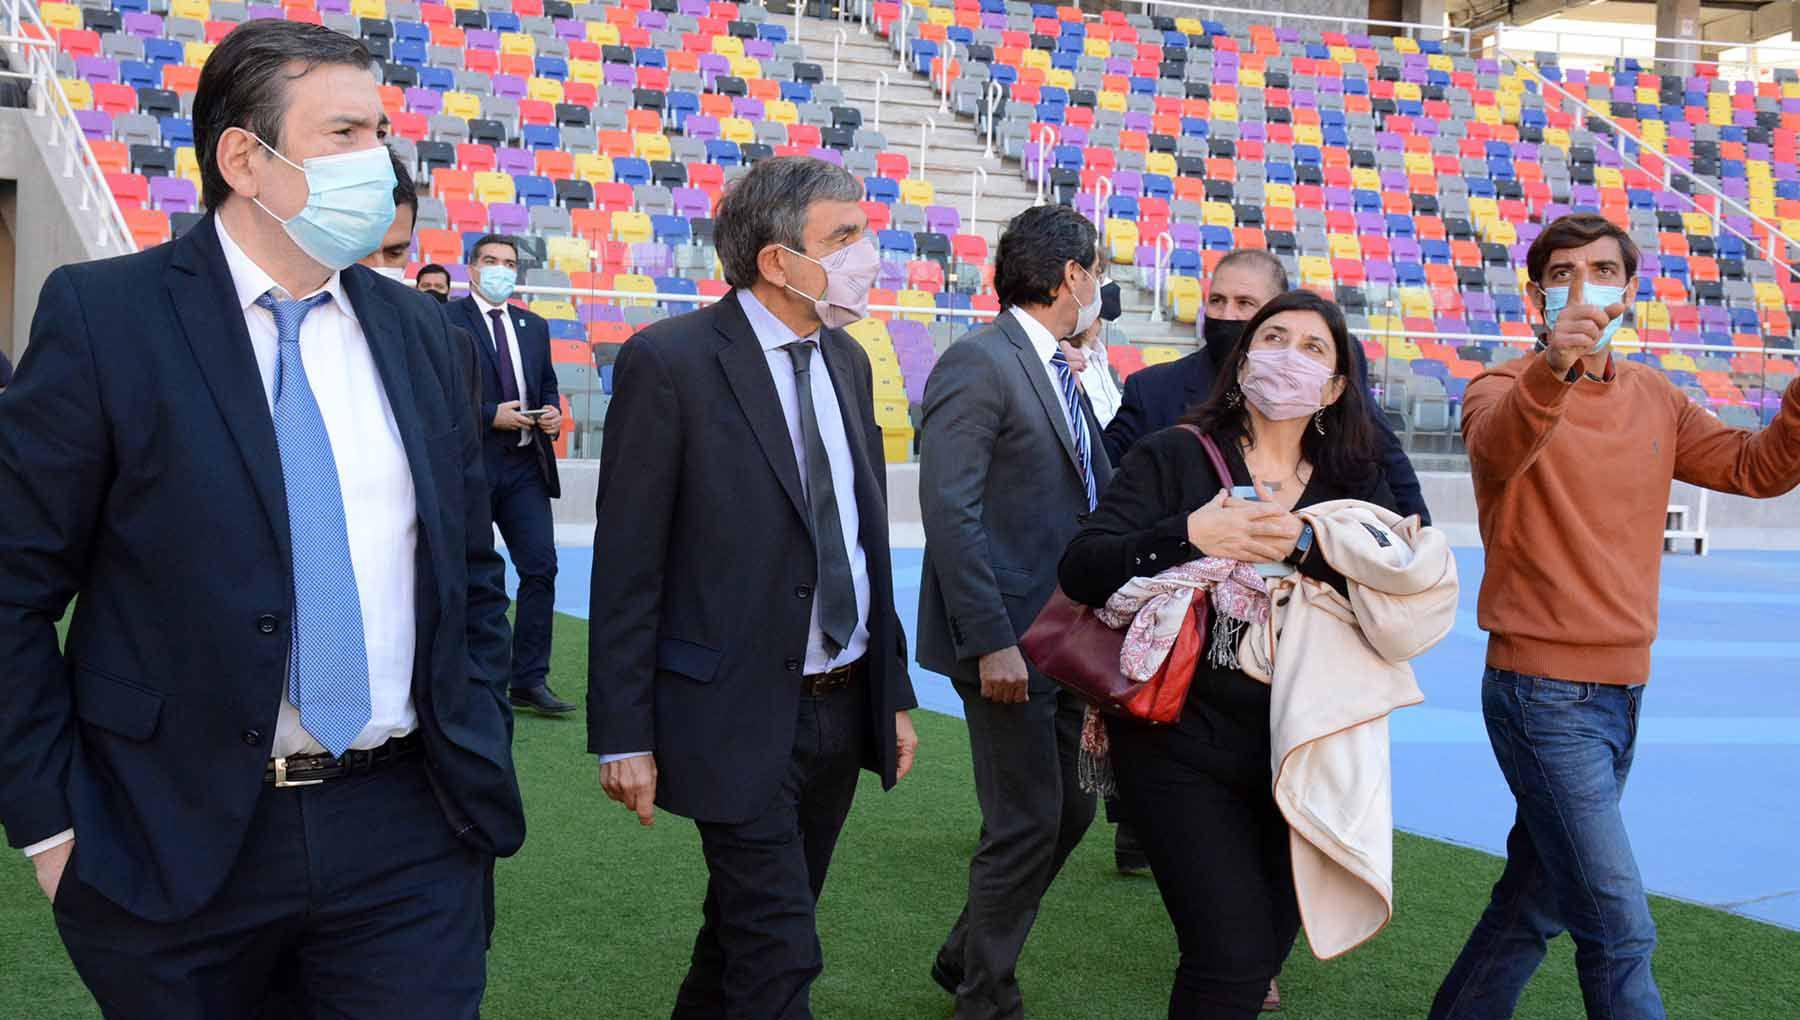 Roberto Salvarezza visitoacute el Estadio uacutenico Madre de Ciudades